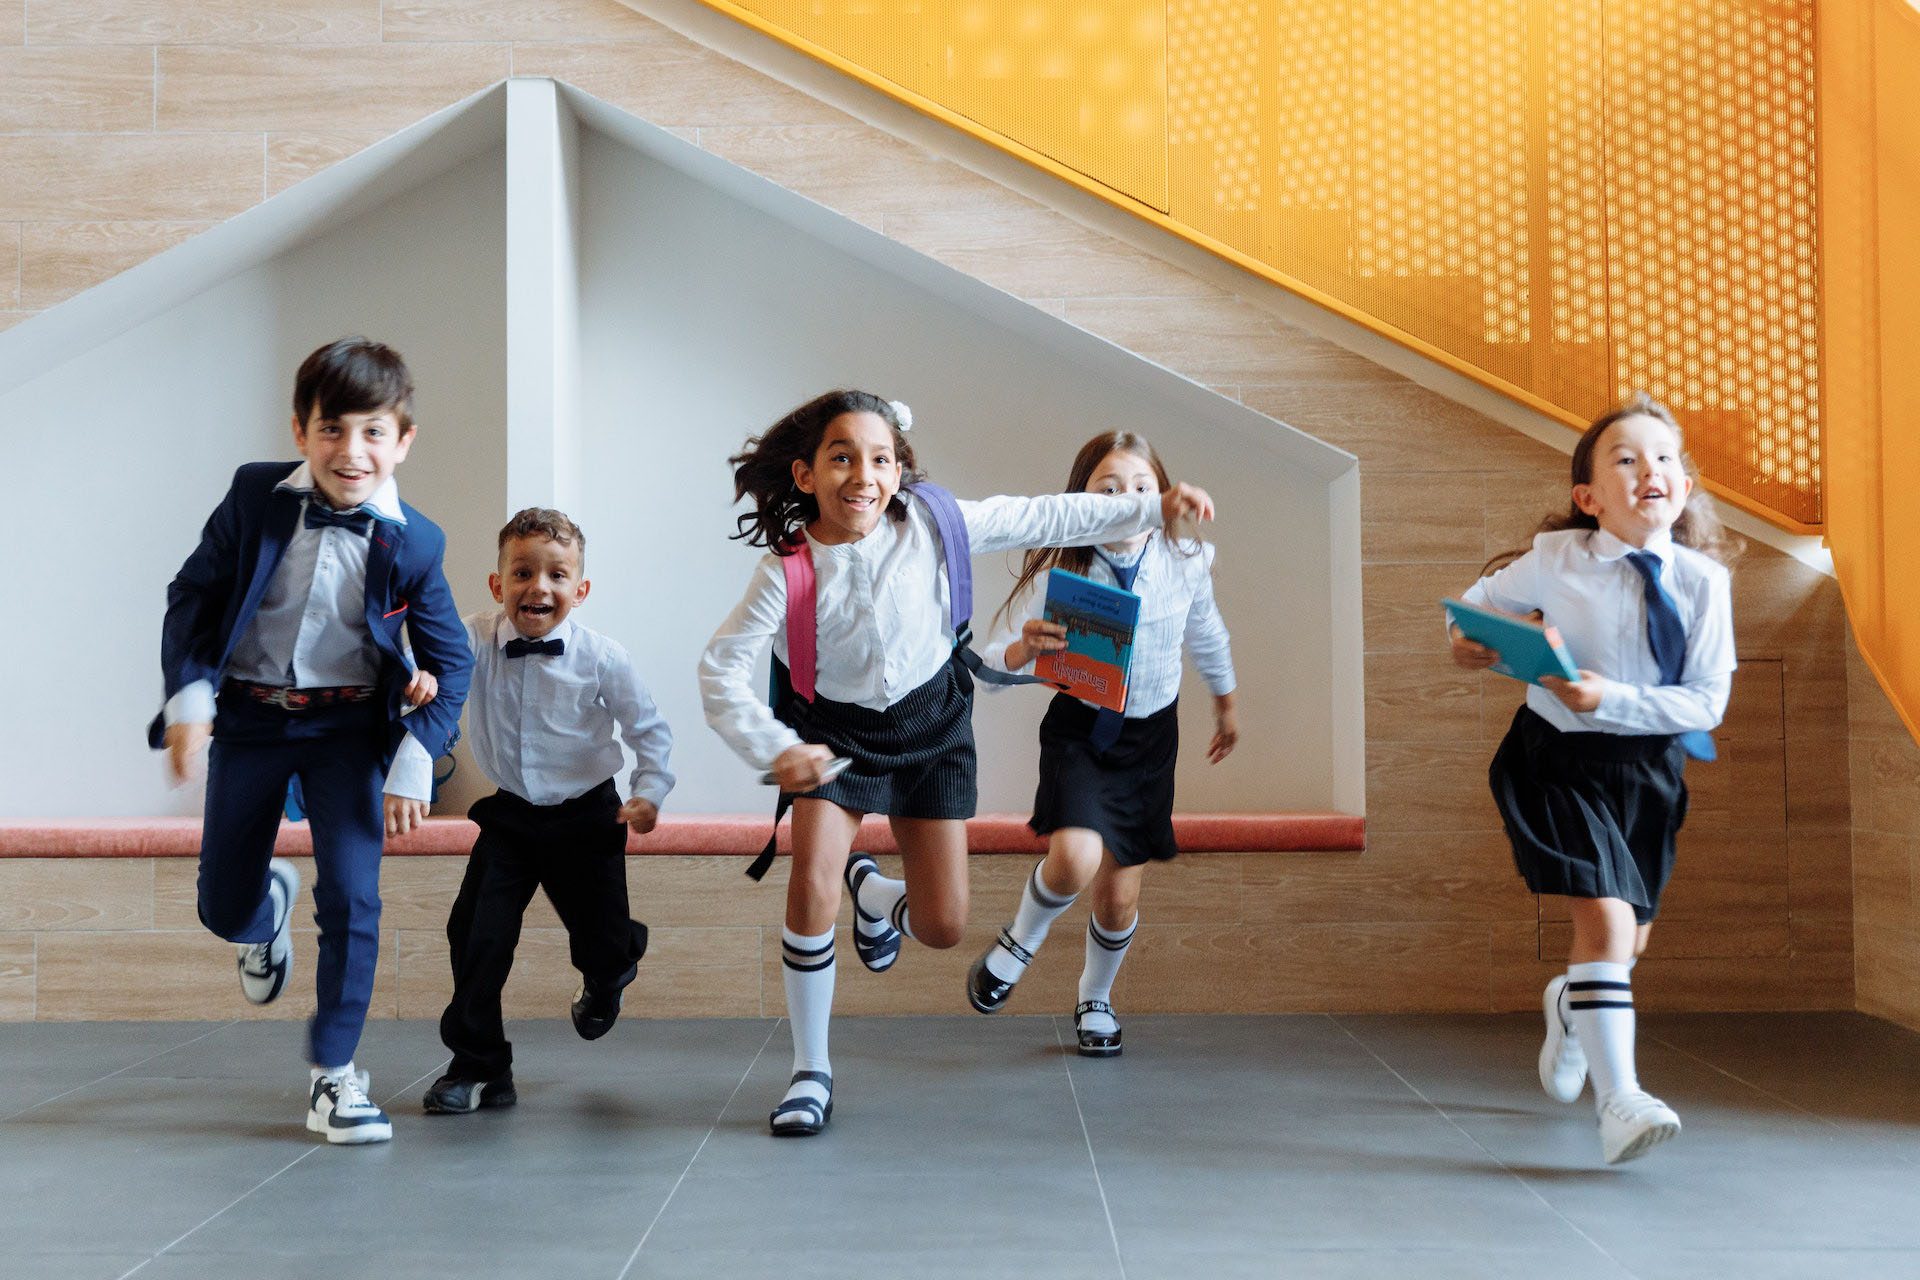 Children running in hallway at school